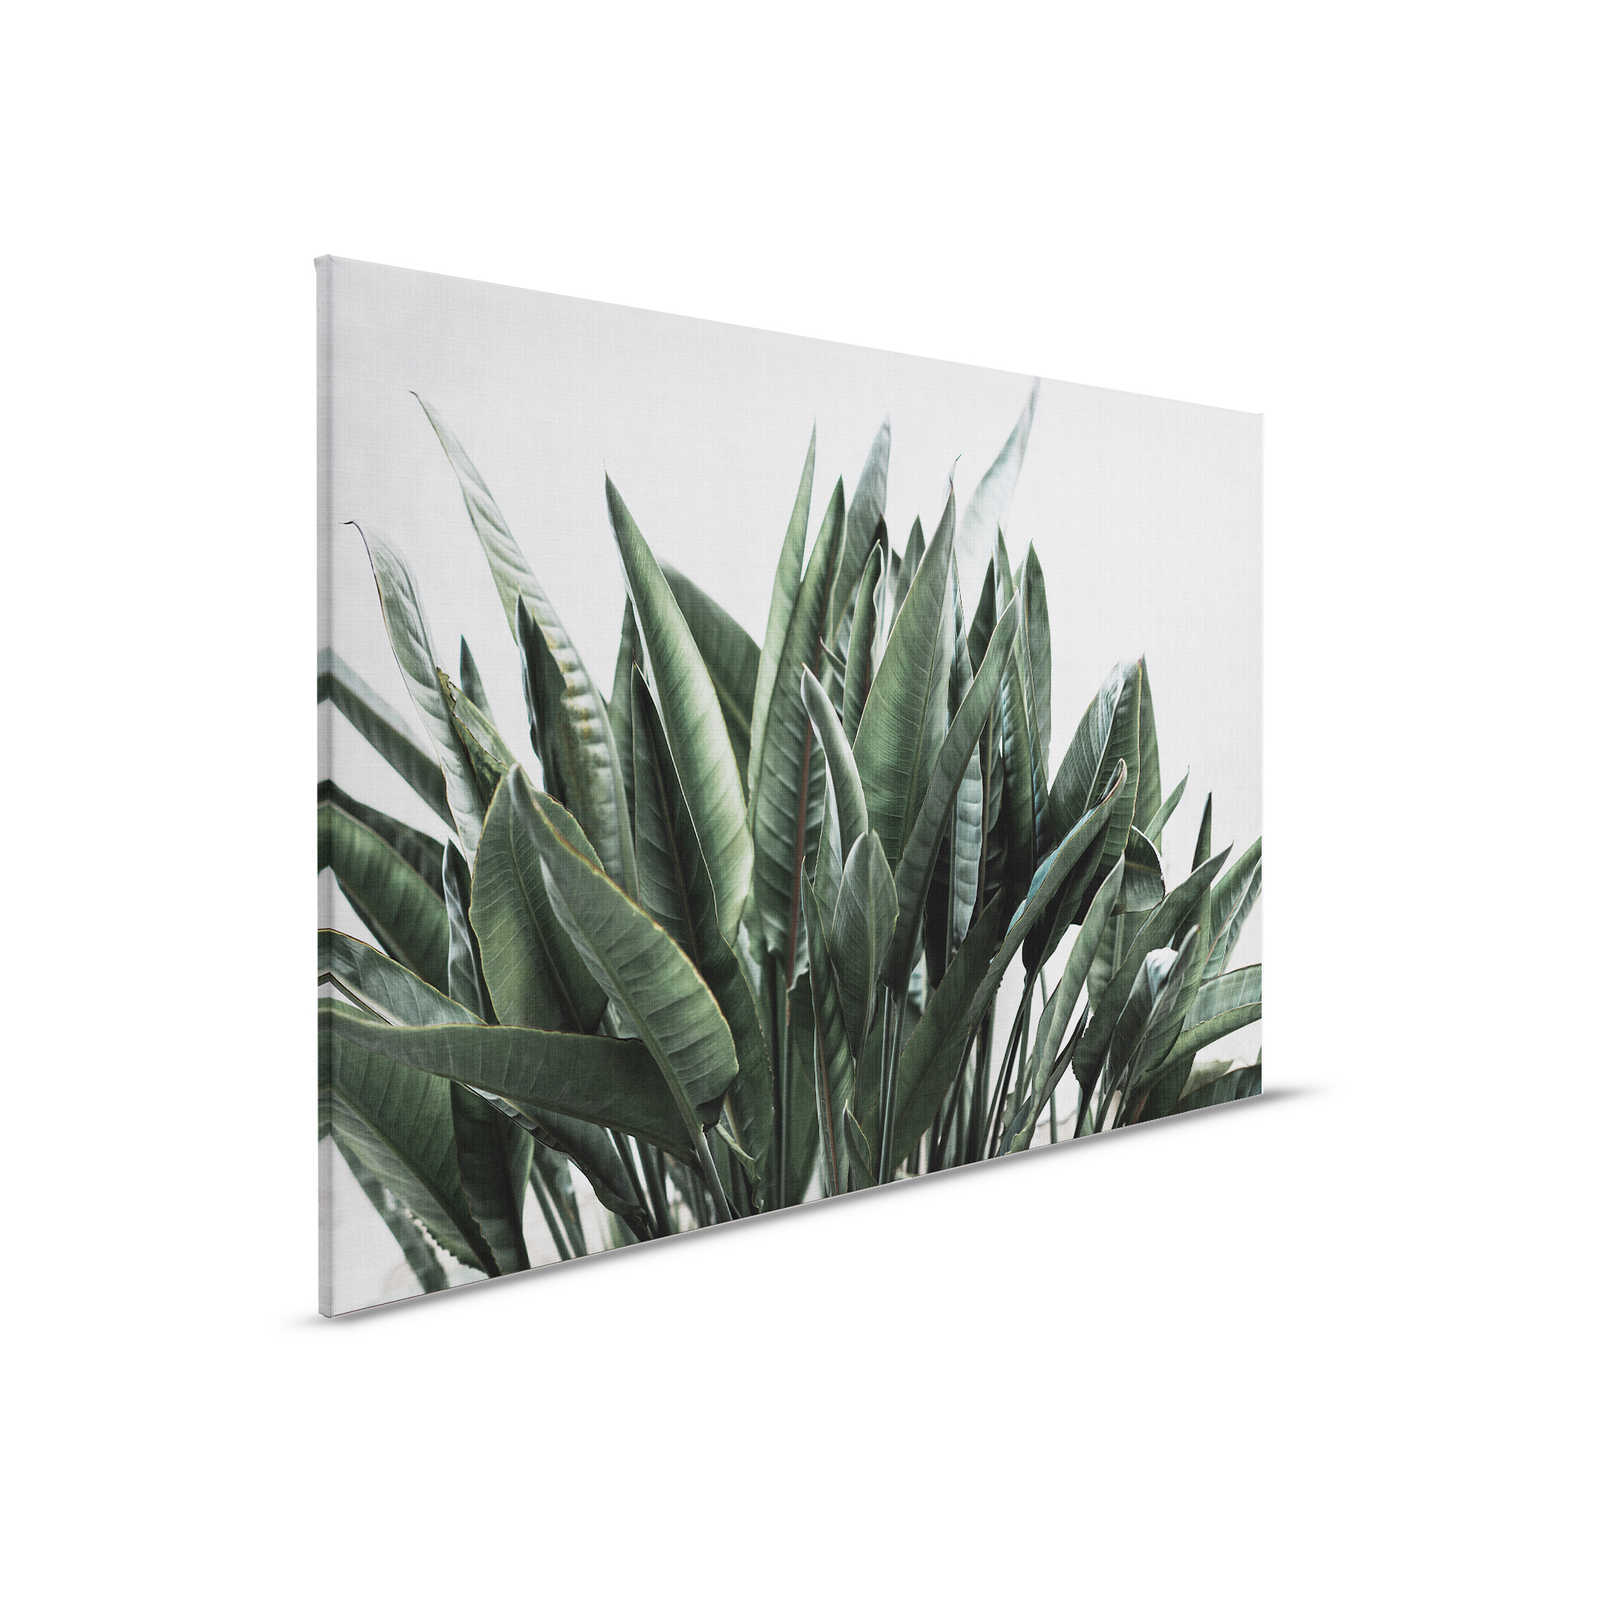 Urban jungle 2 - canvas schilderij met palmbladeren, natuurlijke linnenstructuur exotische planten - 0,90 m x 0,60 m
